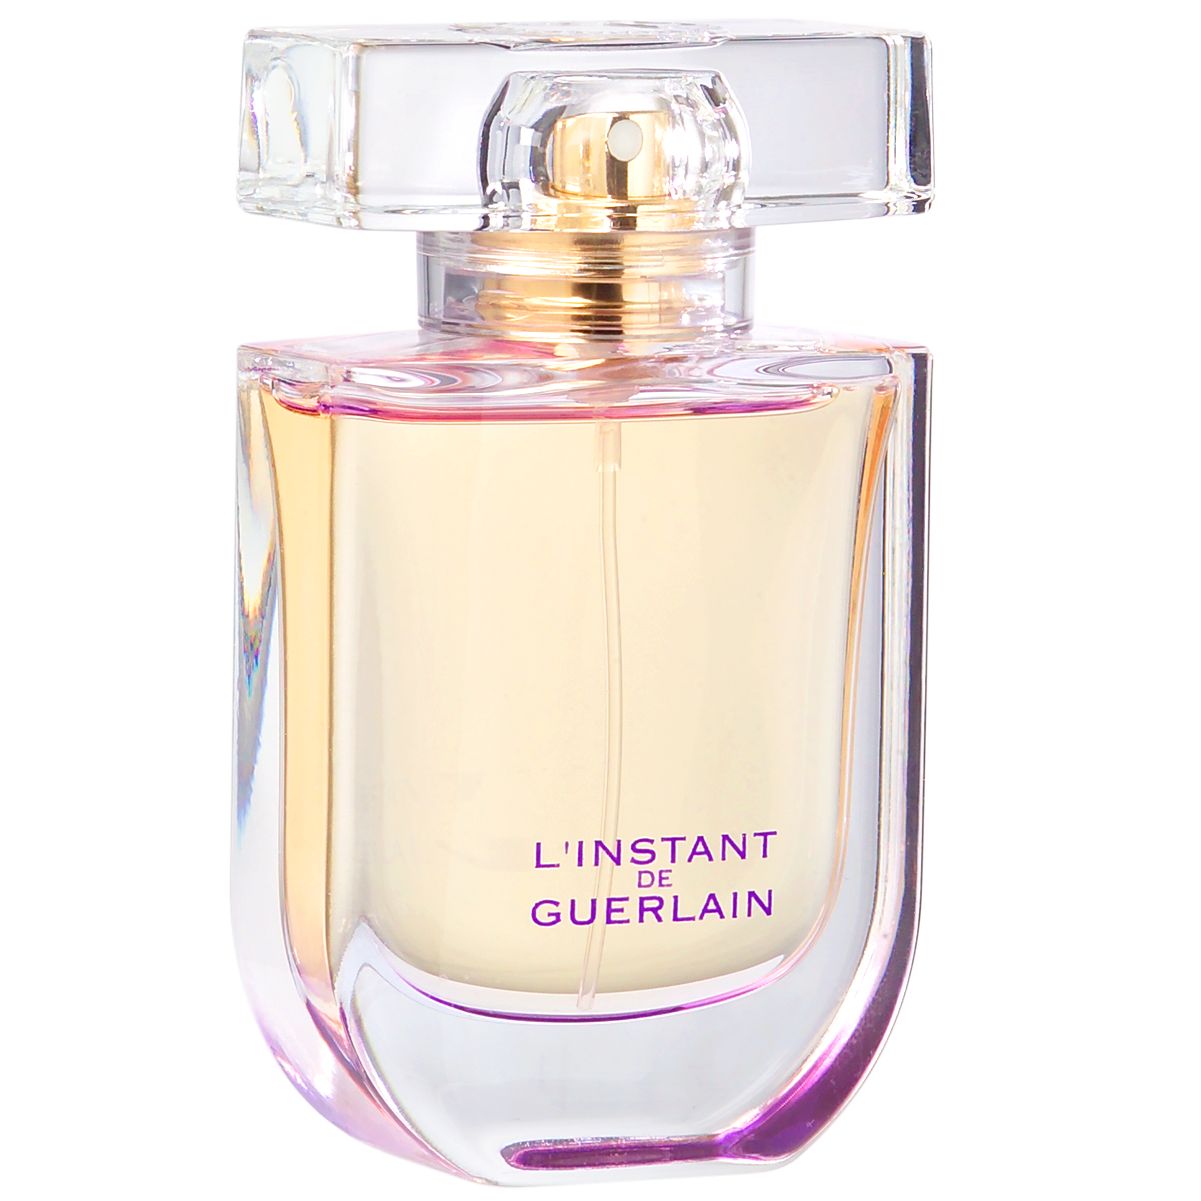 Guerlain L'Instant de Guerlain Eau de Parfum at John Lewis & Partners